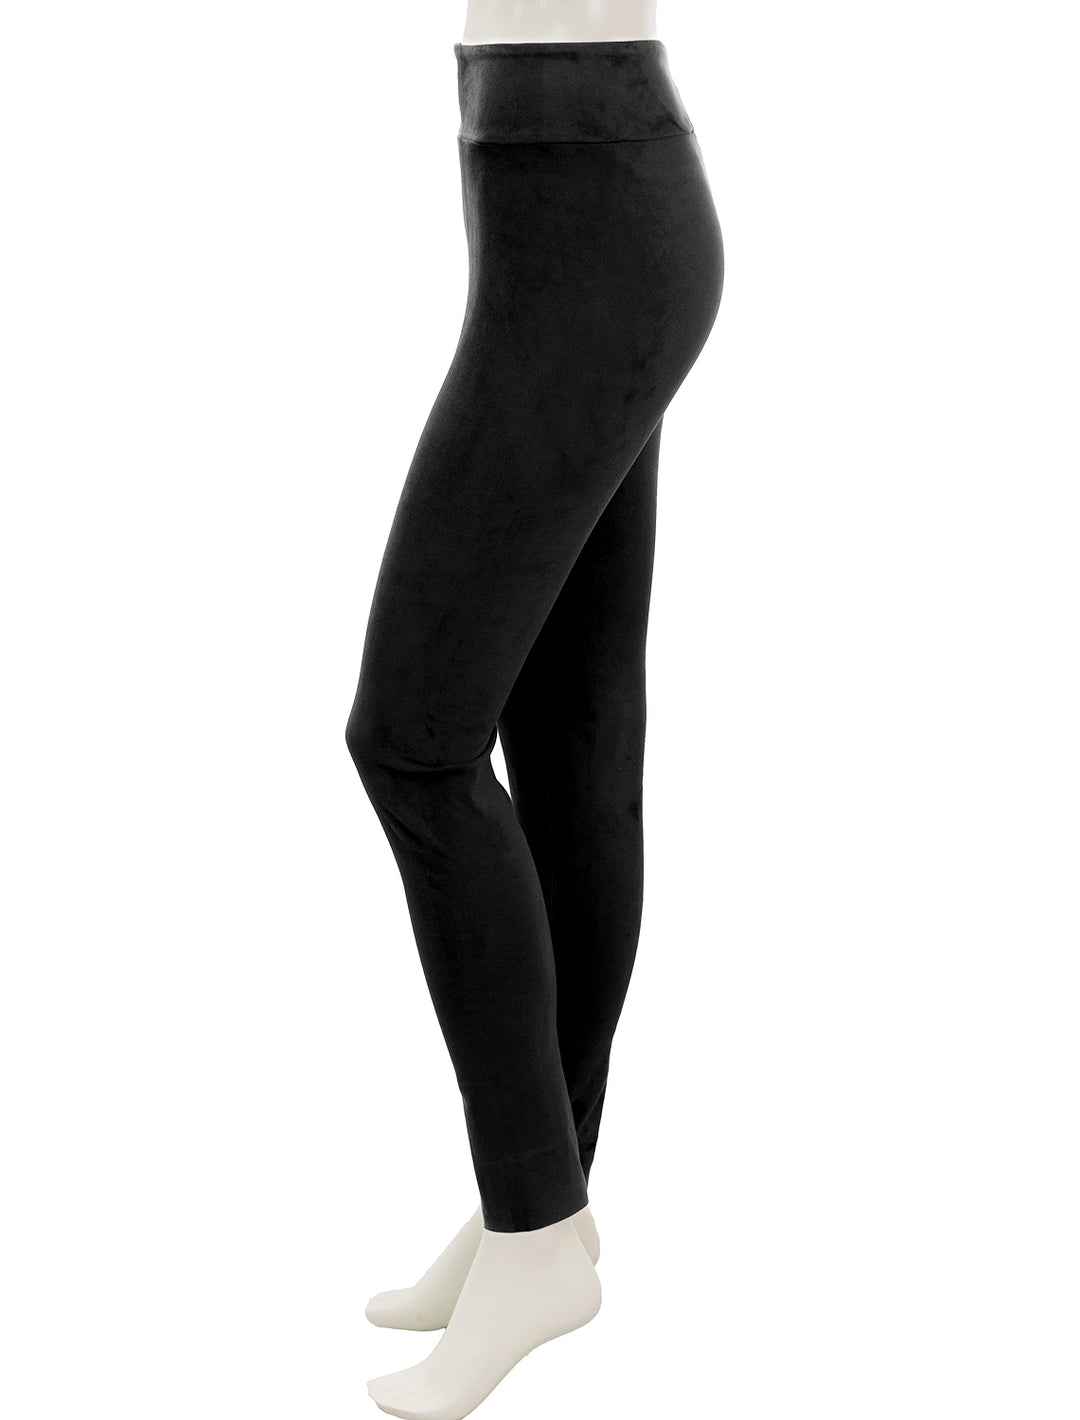 Side view of Splendid's vegan suede leggings in black.